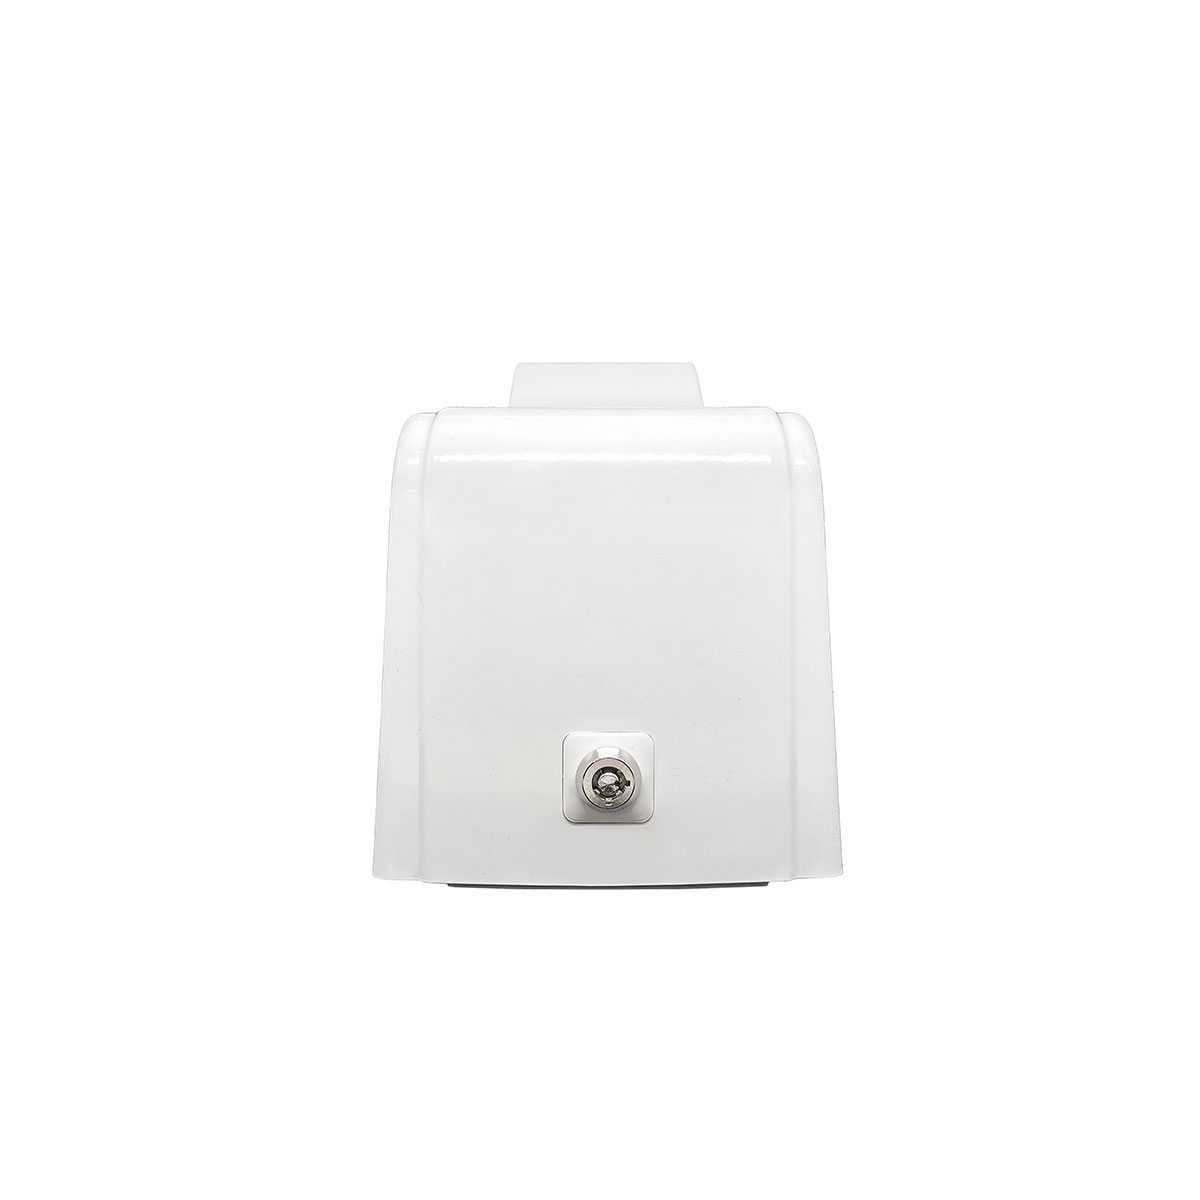 Дозатор для пены X7 нажимной 0,7 л БИЗНЕС, корпус белый, стекла прозрачные, кнопка белая фото 3